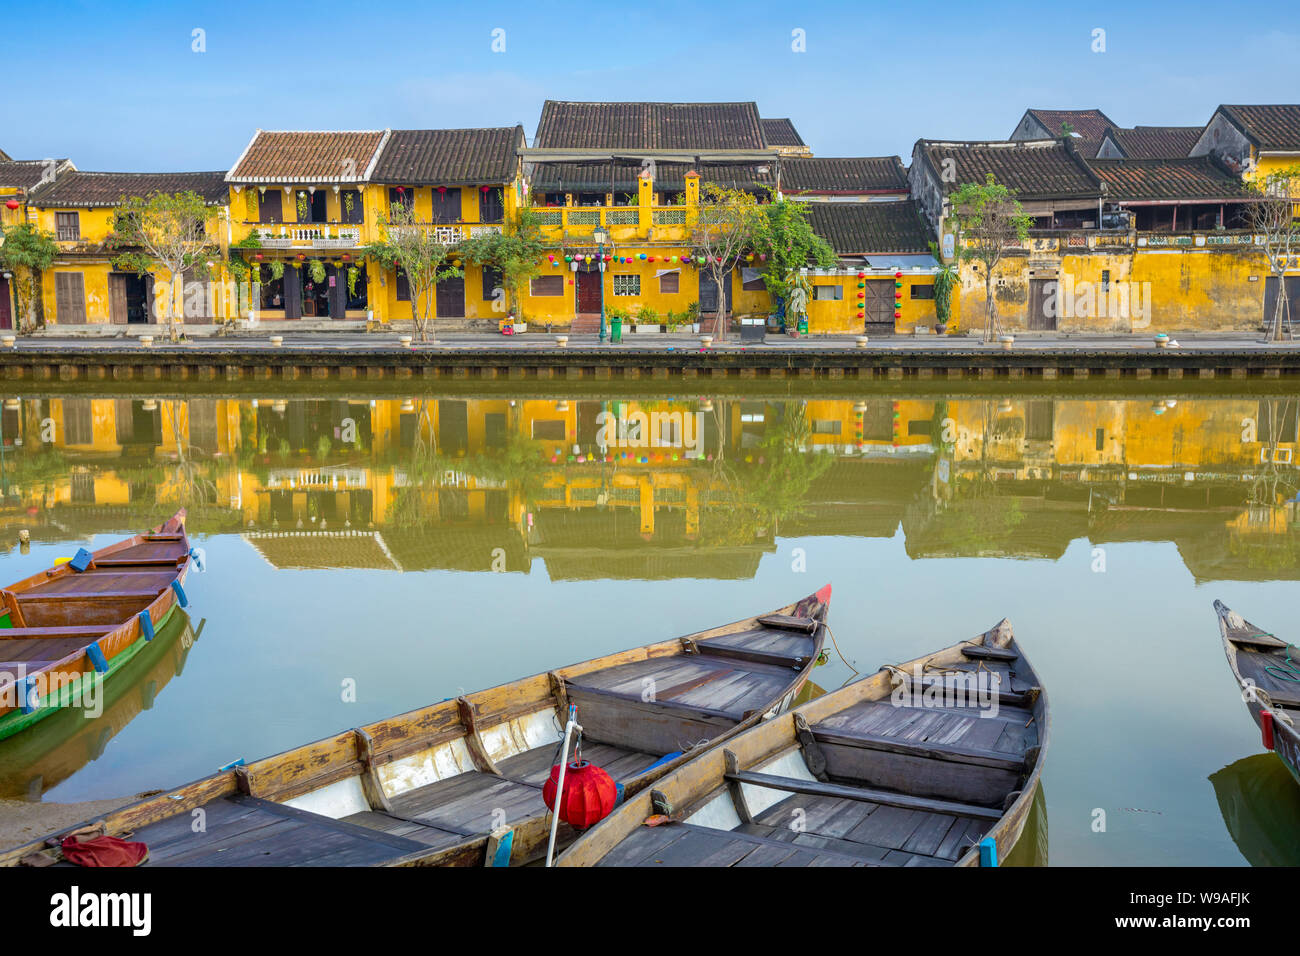 La vieille ville La ville de Hoi An au Vietnam. Banque D'Images